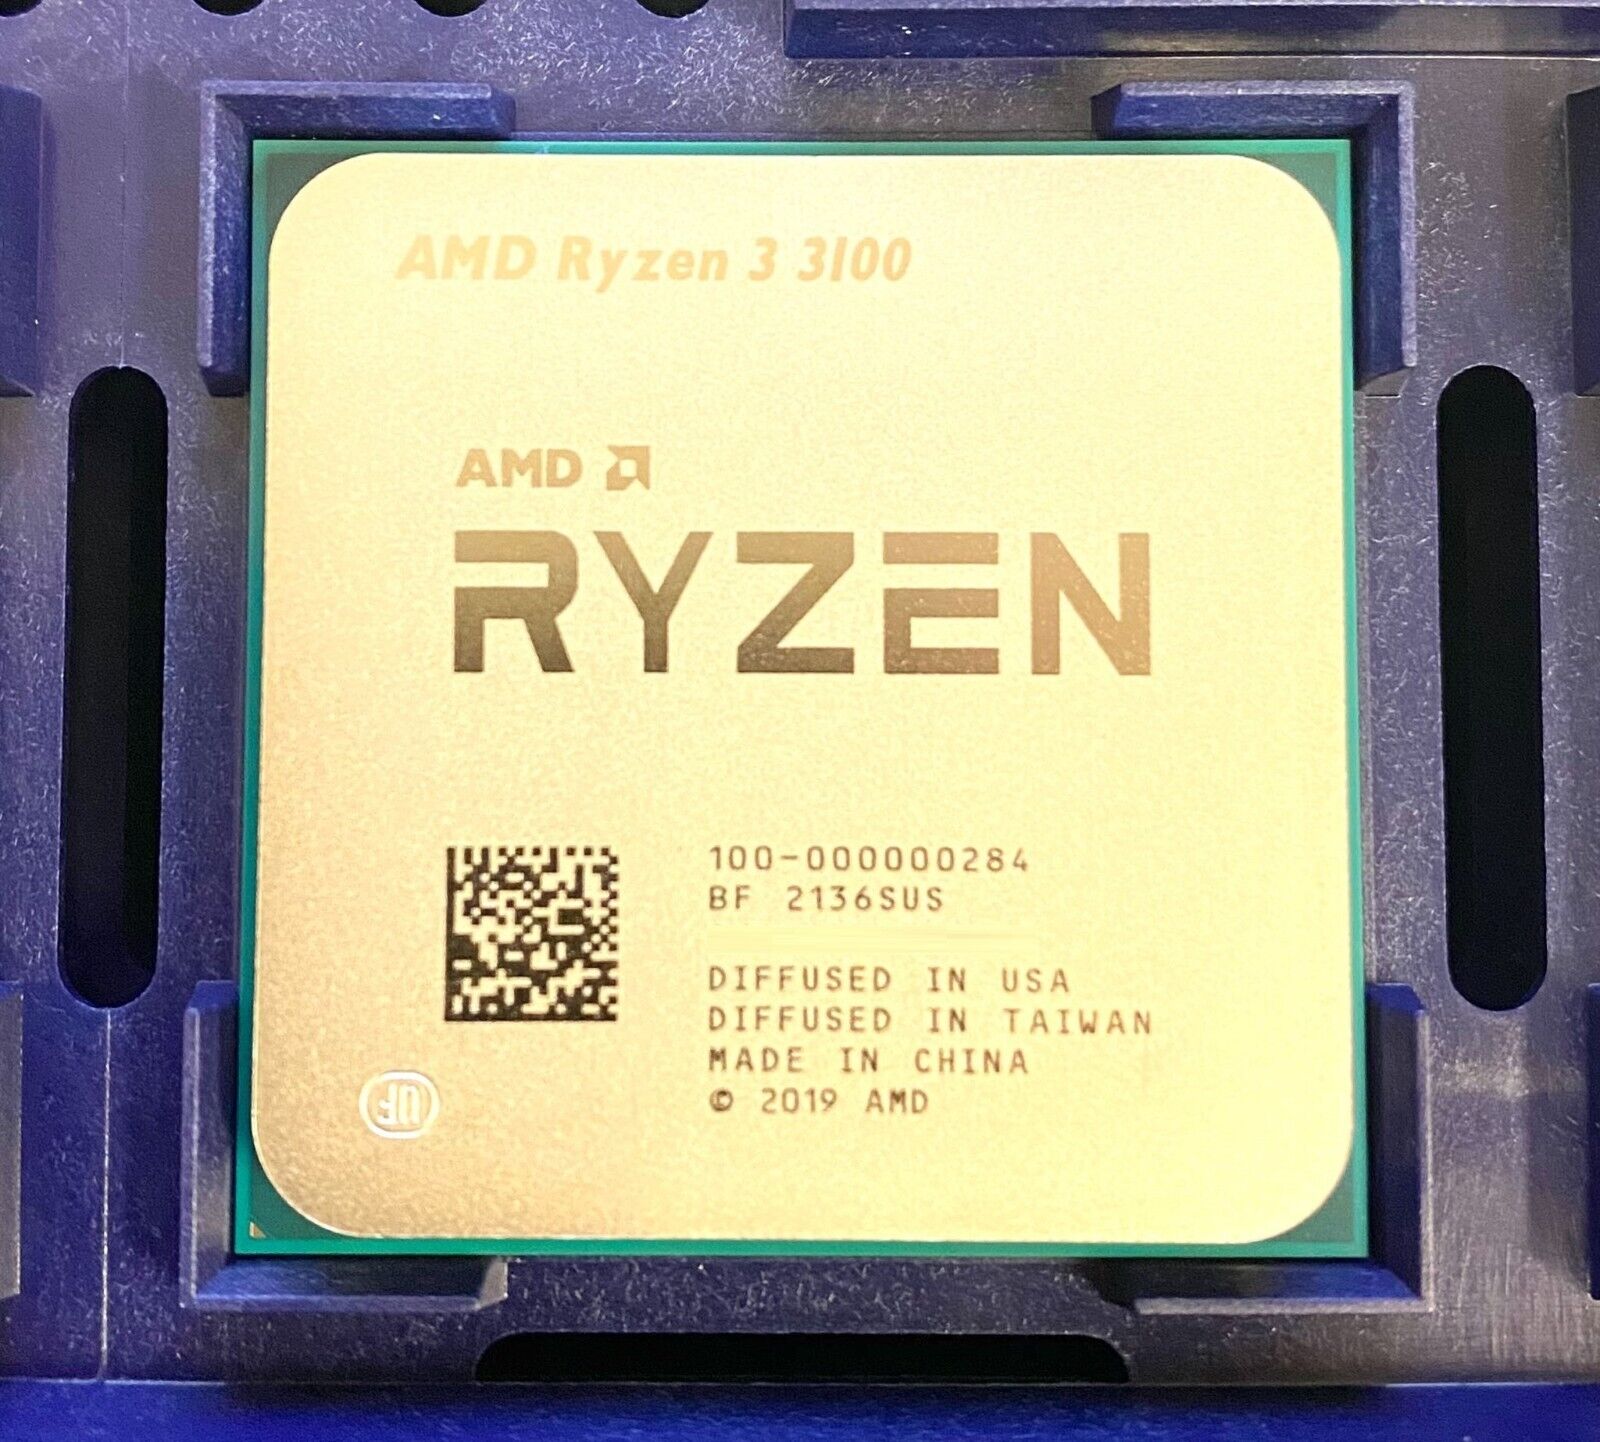 AMD Ryzen 3 3100 AM4 CPU Processors R3 3100 3.6 GHz Quad Core 65W OEM Ver.